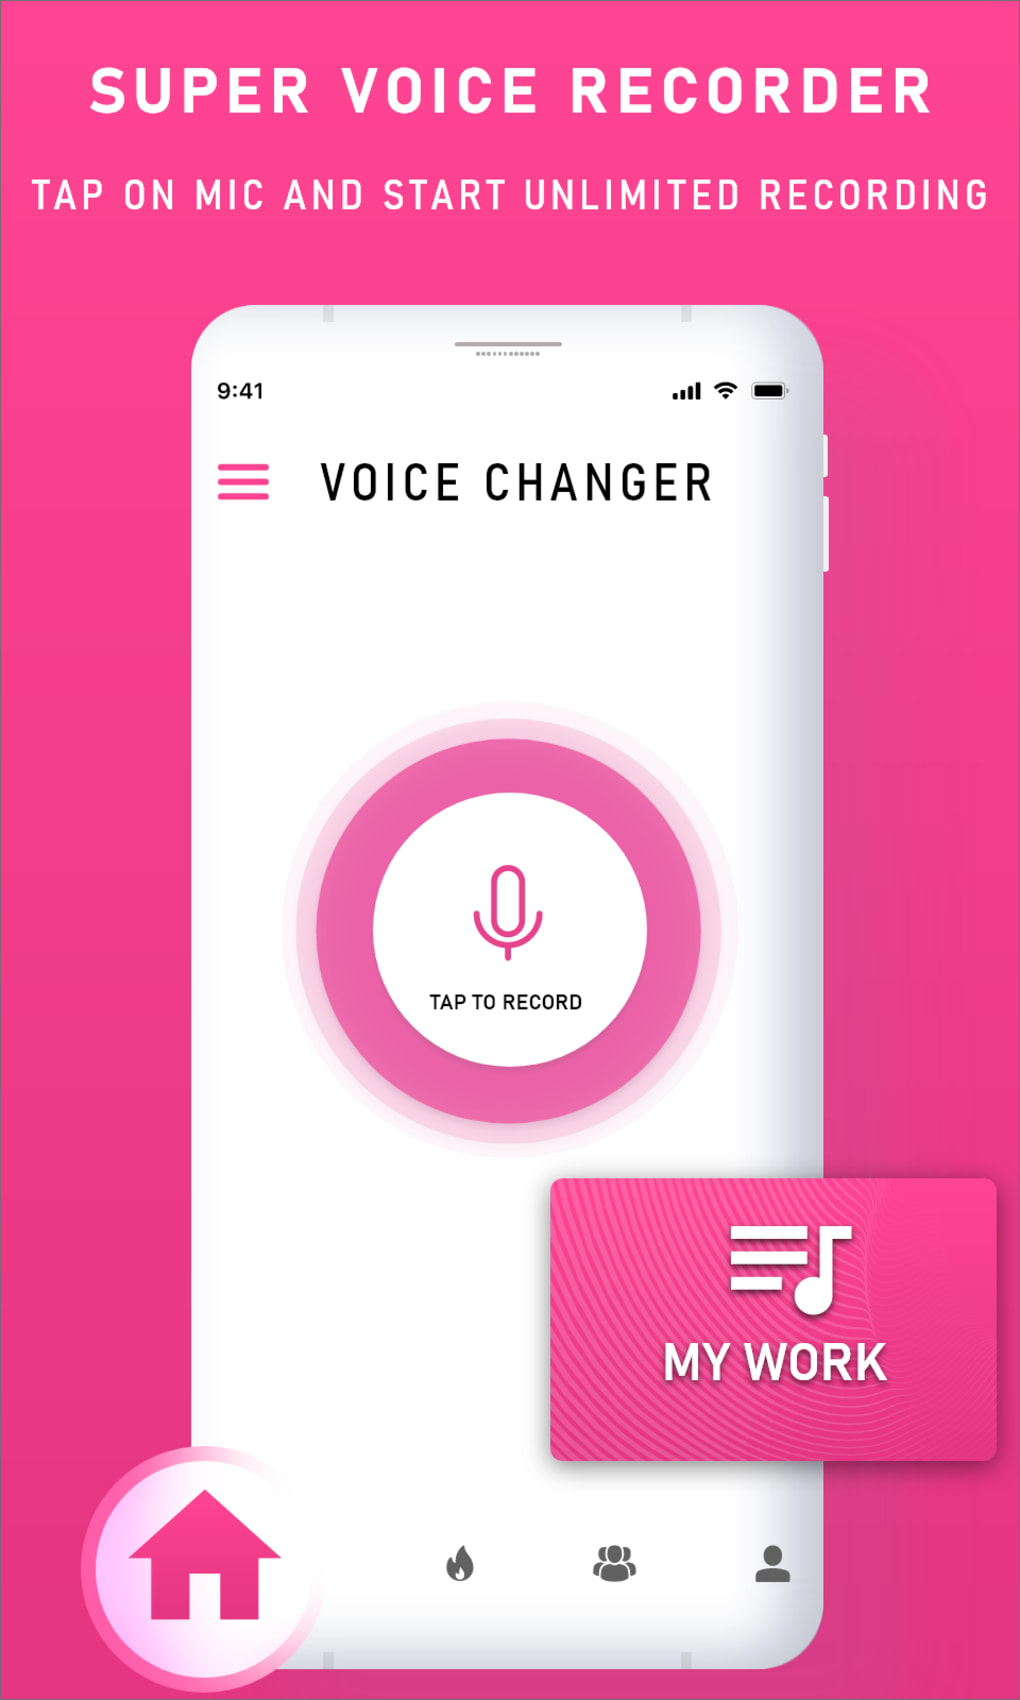 Télécharger Changeur de voix avec effets 4.0 APK pour Android Gratuit